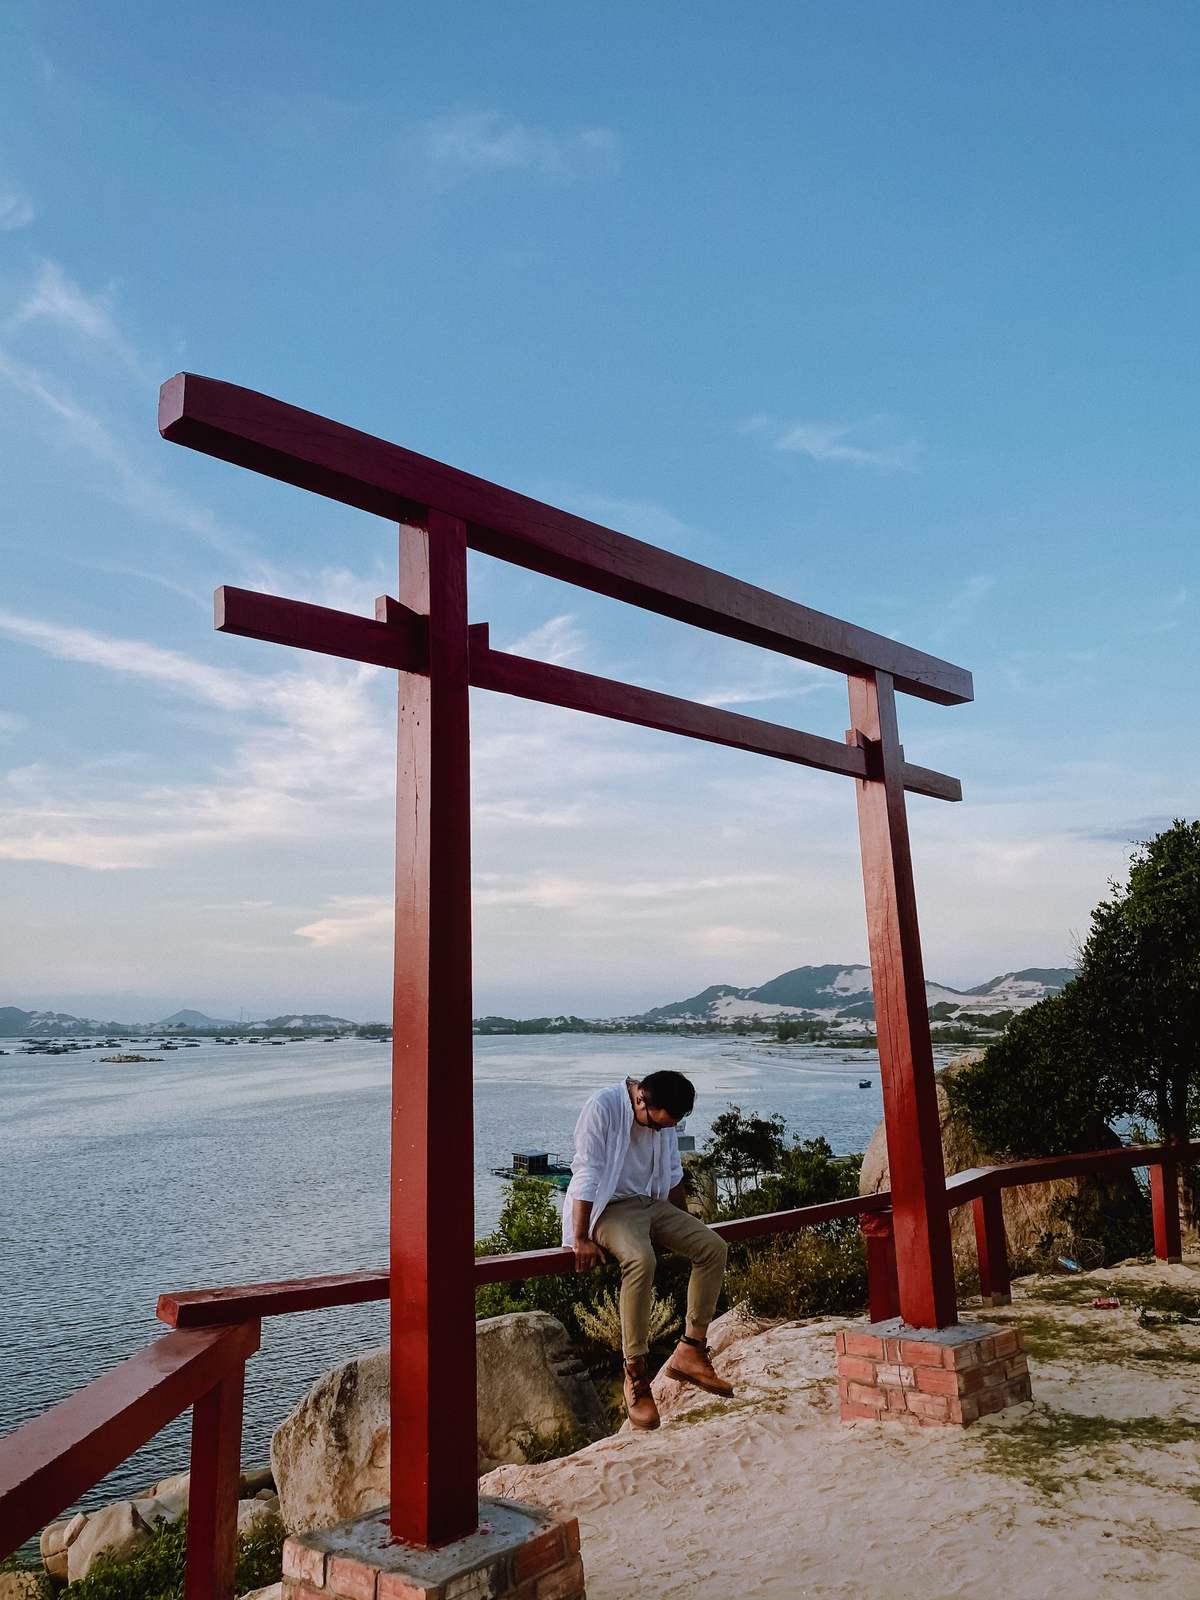 Khám phá vẻ đẹp độc đáo của đảo Điệp Sơn - Nha Trang qua bộ ảnh của Cường Quốc Phạm 15